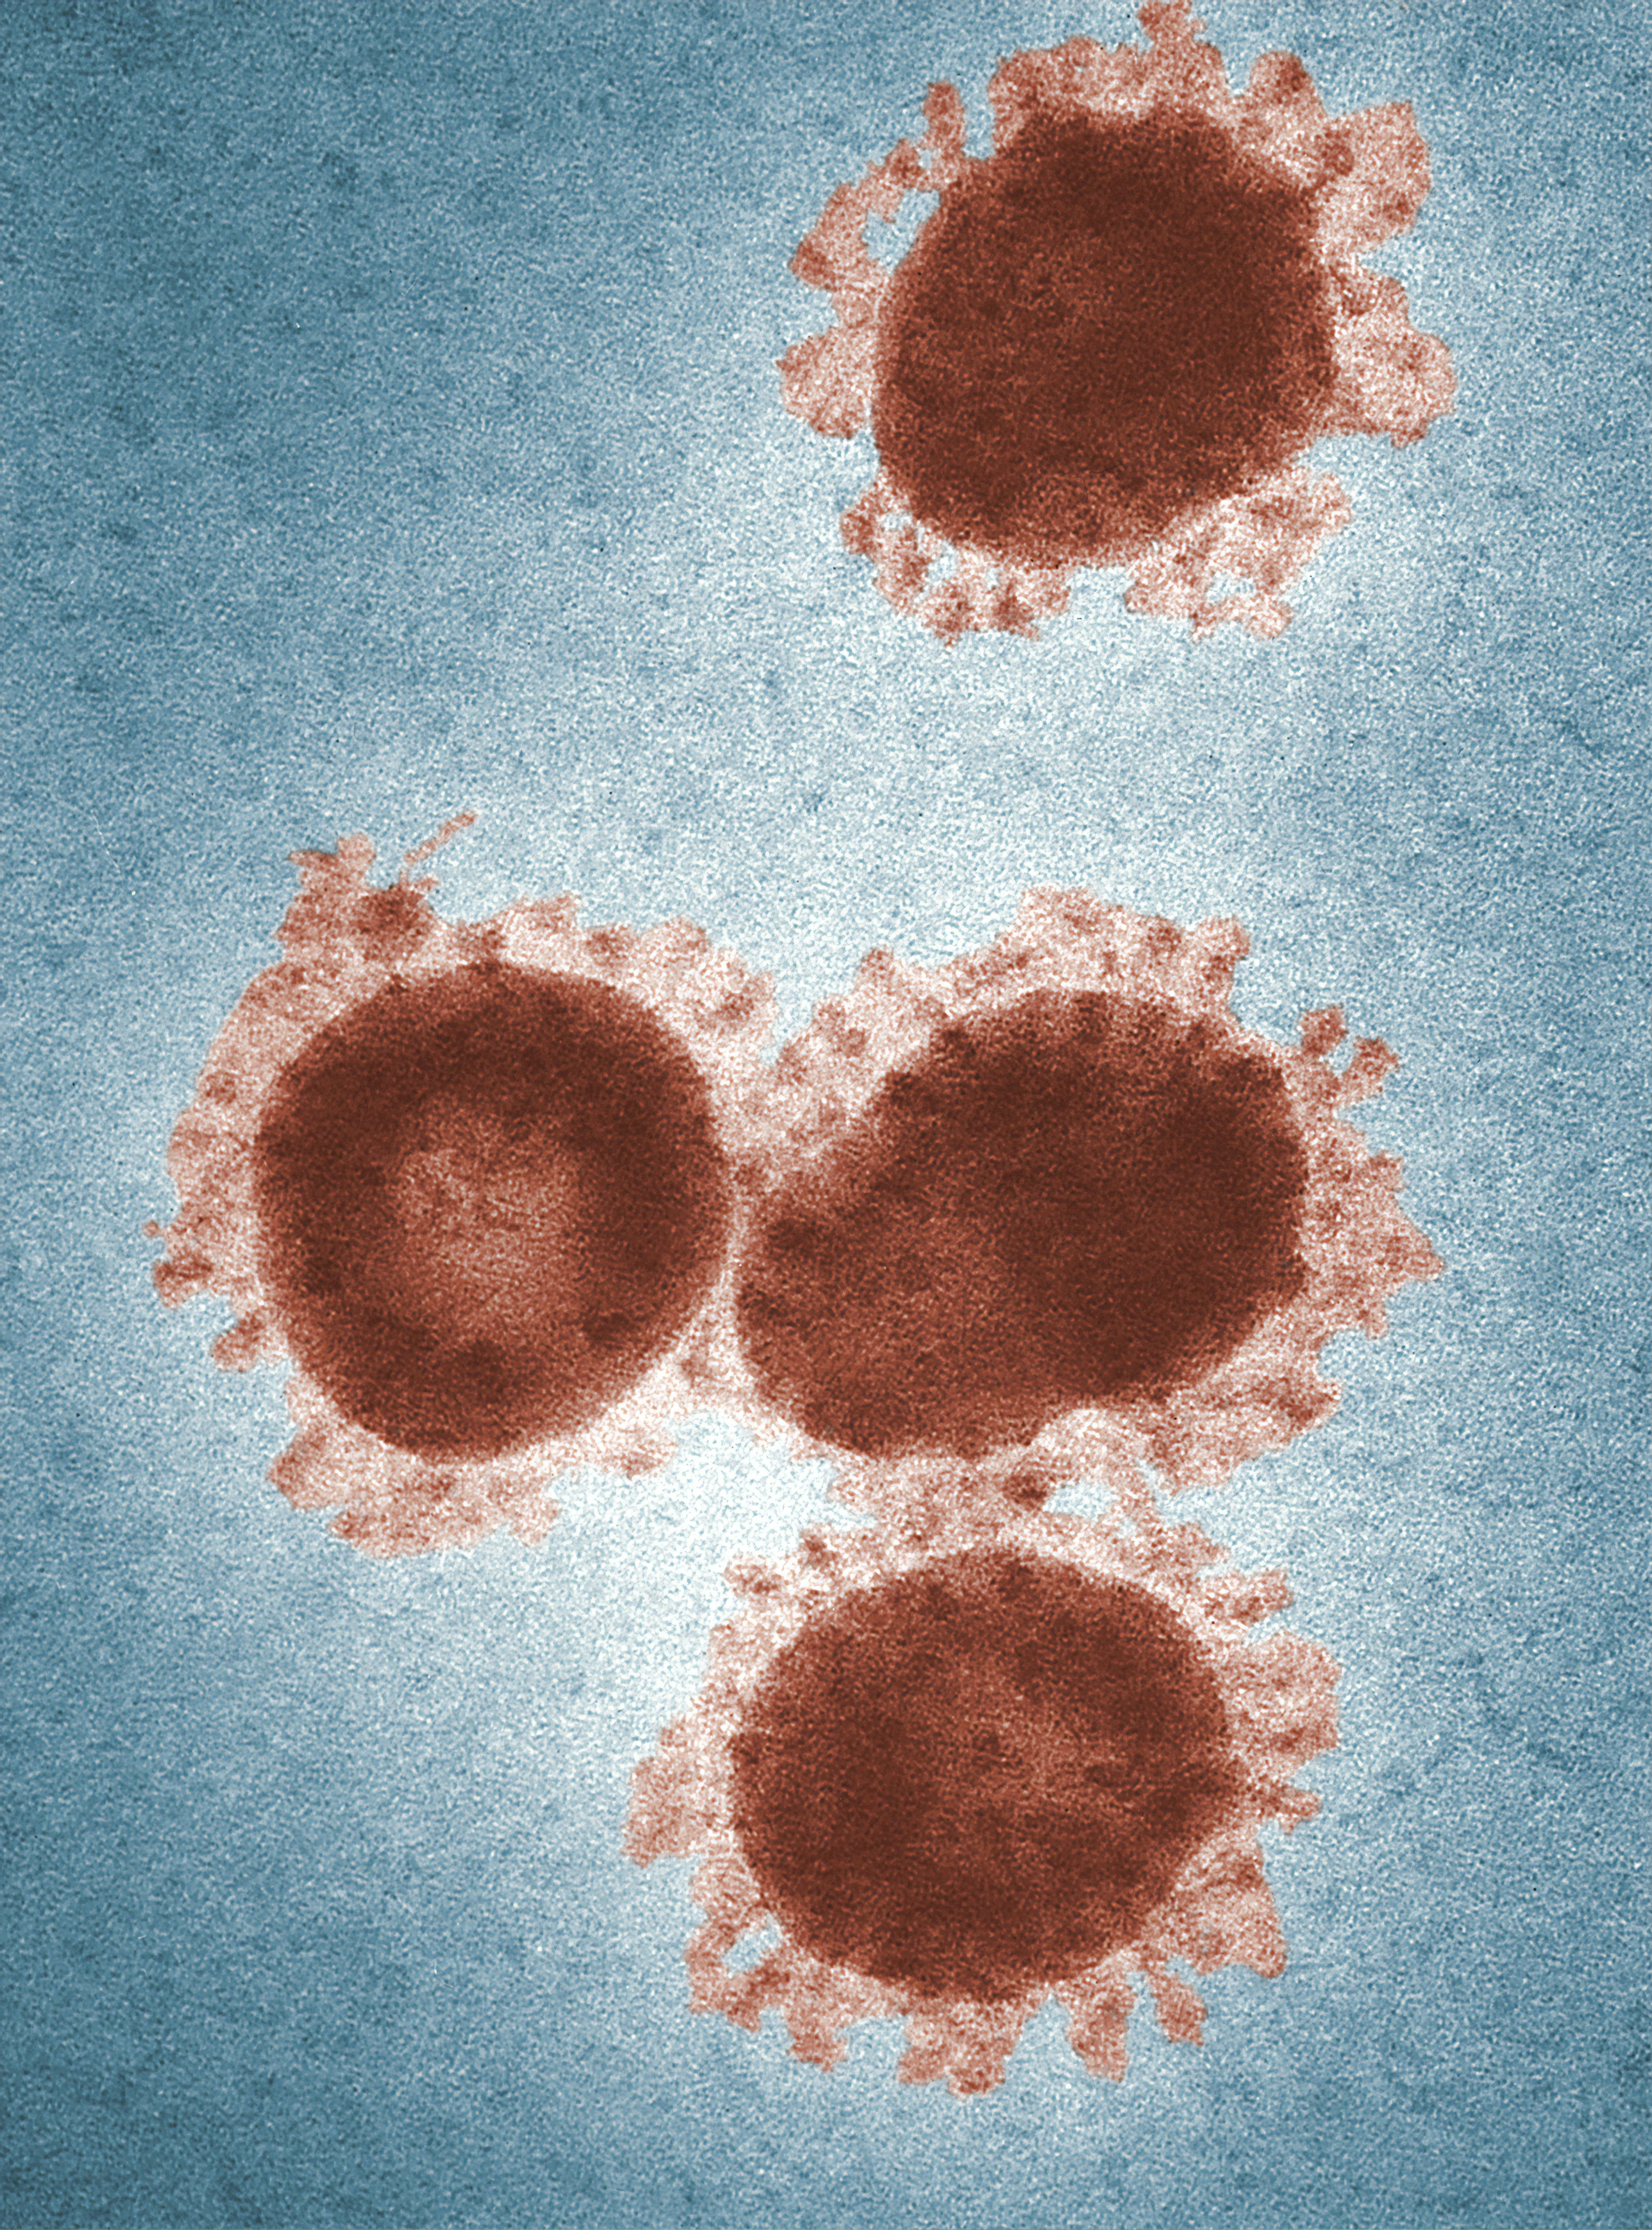 La immunitat al coronavirus podria durar més de sis mesos, segons un estudi